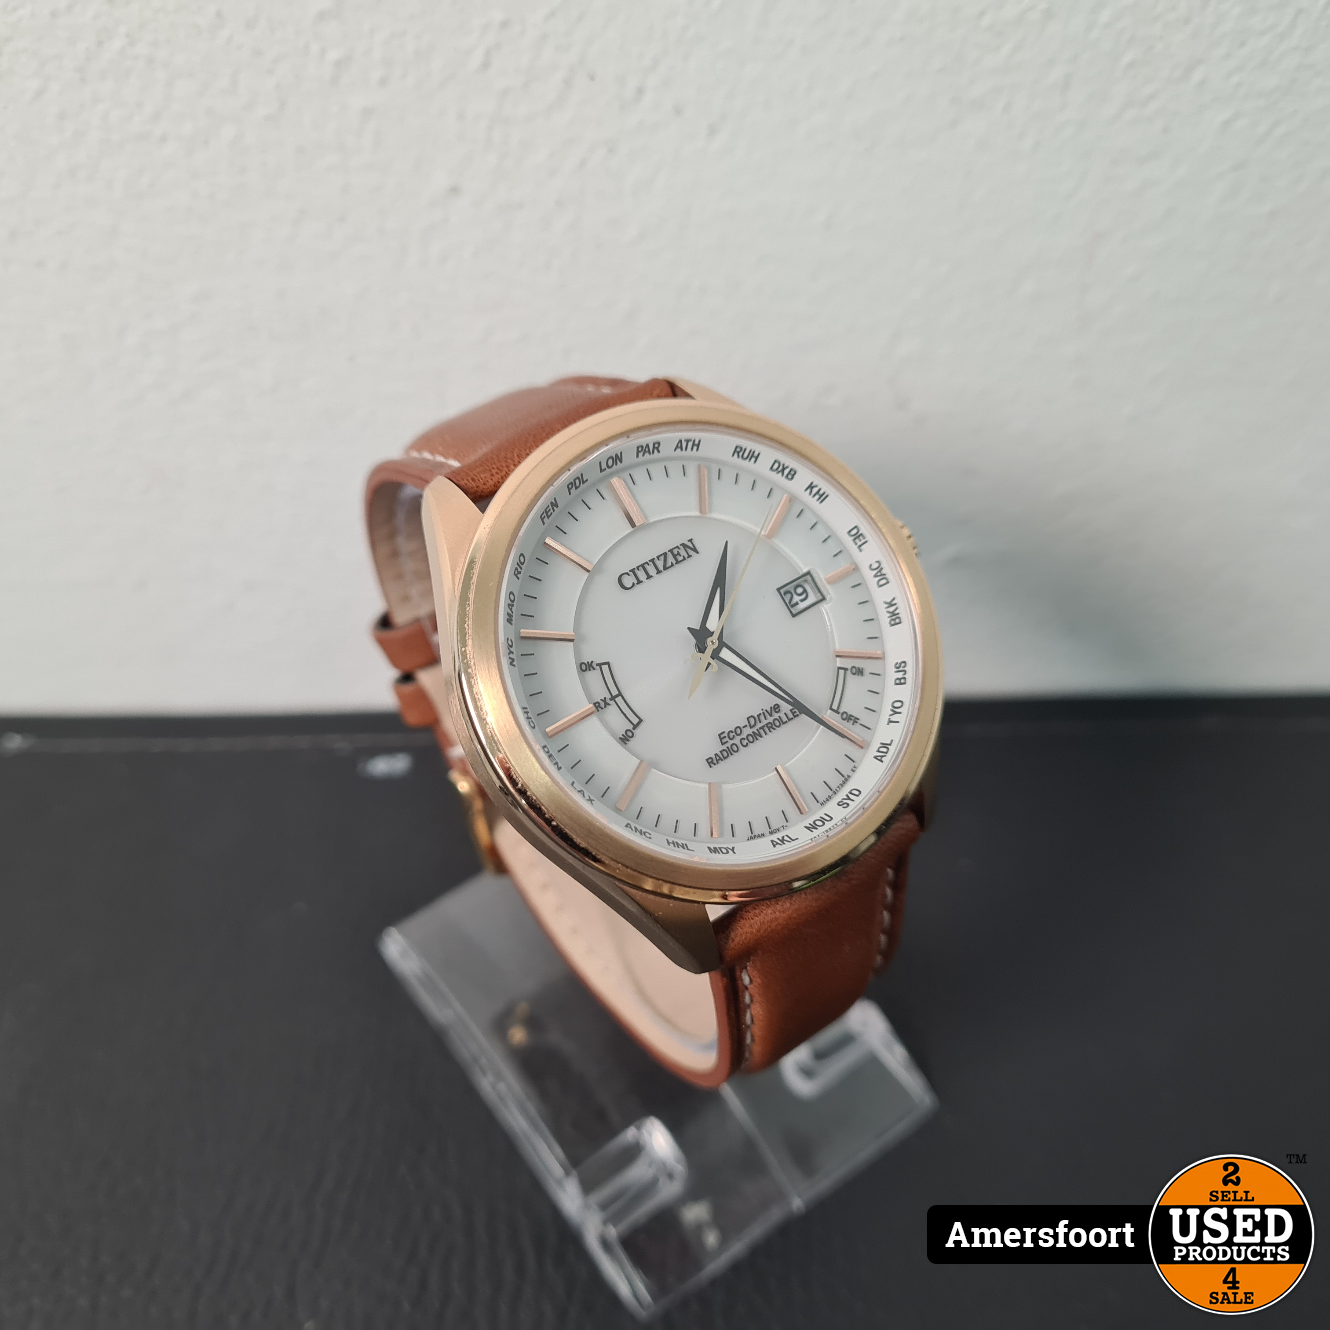 nek Heerlijk terwijl Citizen Eco Radio Controlled Horloge H145 - Used Products Amersfoort